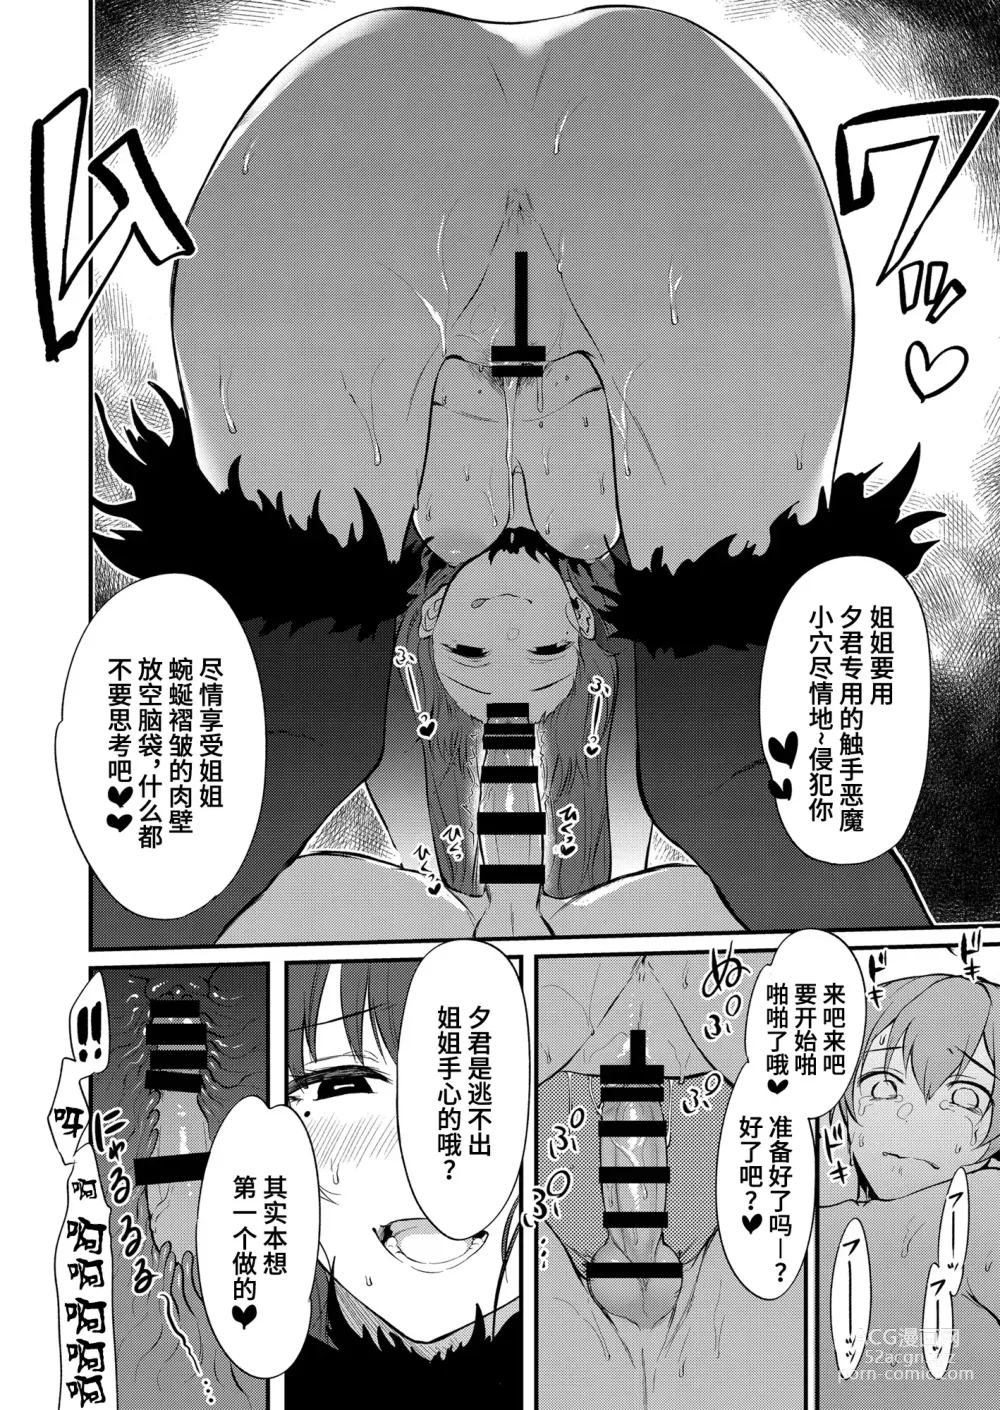 Page 326 of doujinshi Ane Naru Mono 1-11